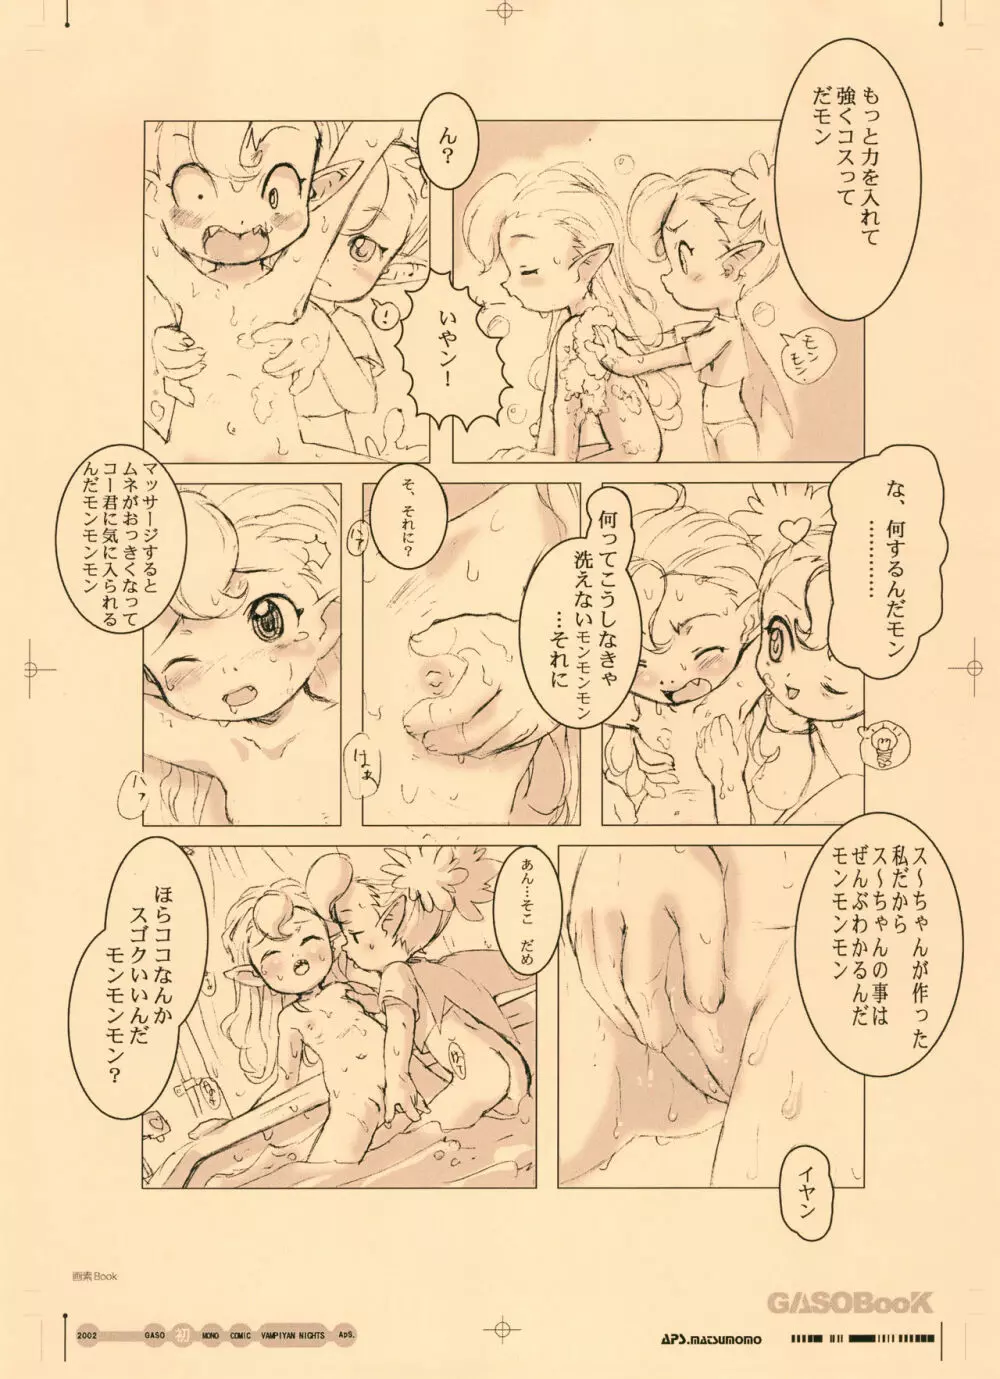 画素BooK 原稿用紙 キッズアニメトロニカズ -0208 6ページ